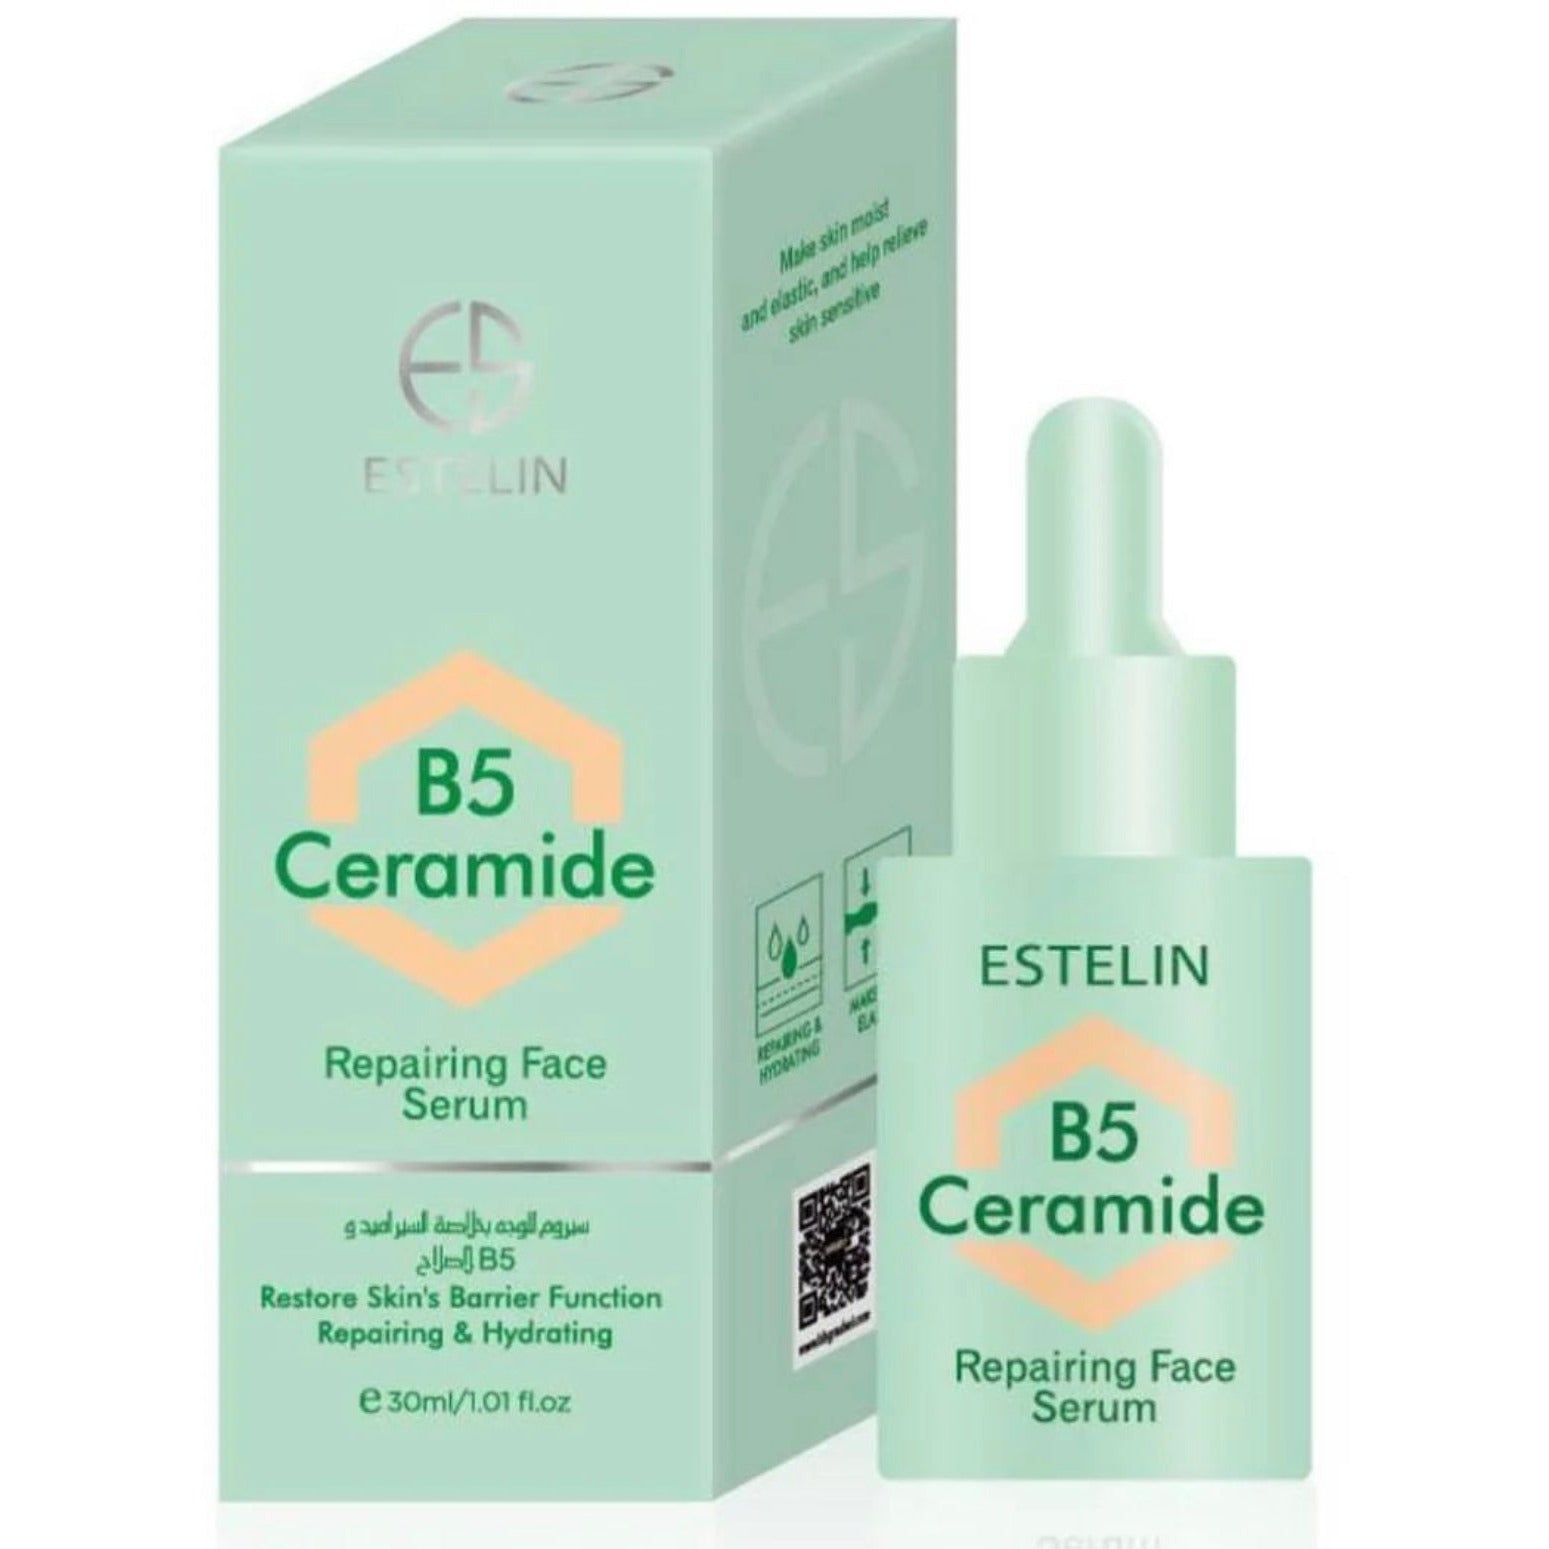 Estelin B5 Ceramide Repairing Face Serum